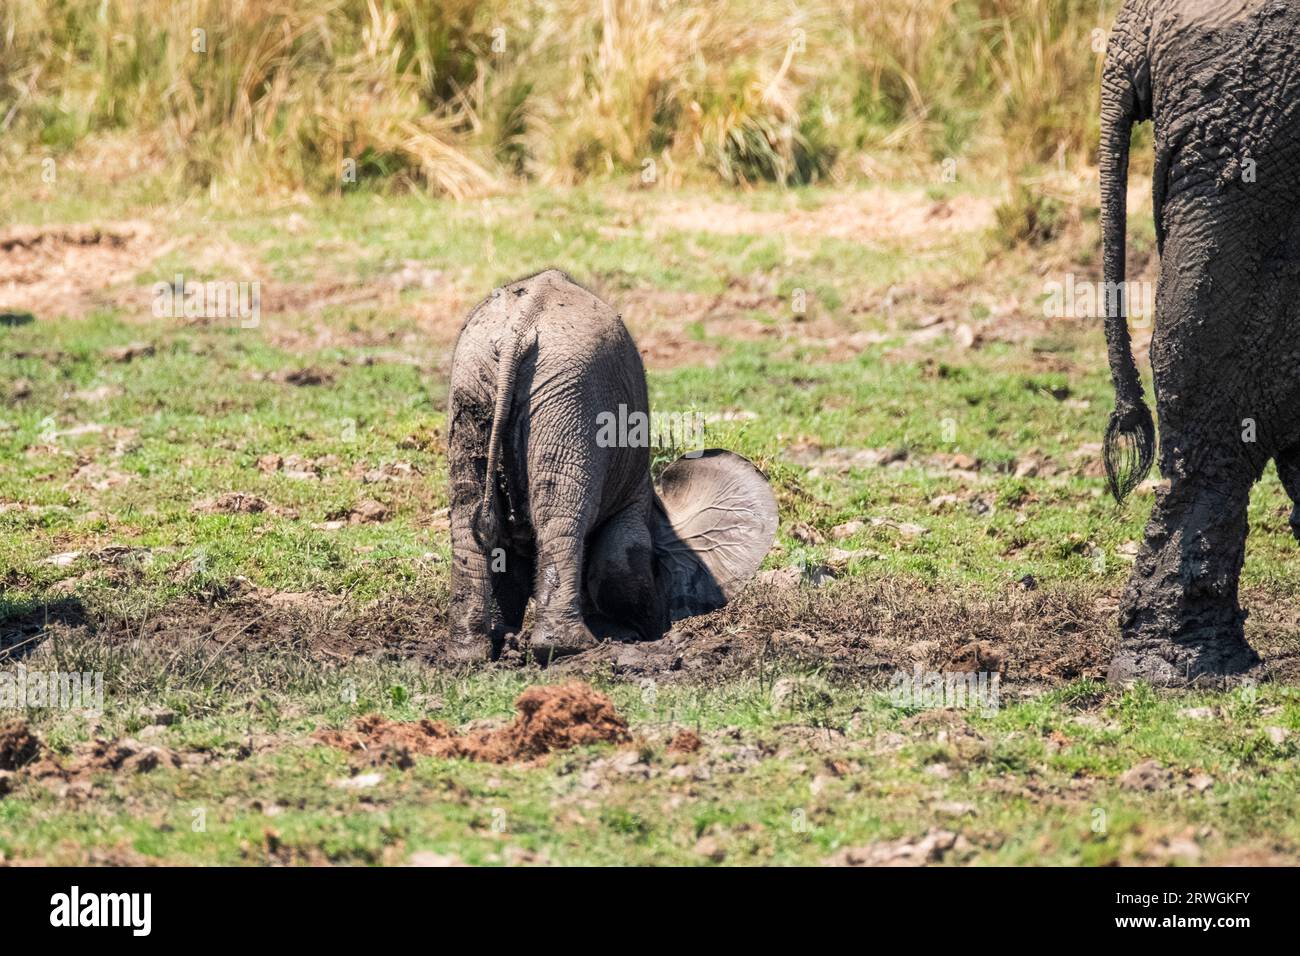 Elefantenbabys (Loxodonta africana) spielen im Schlamm. Steckt seinen Kopf in den Schlamm. Lower Zambezi National Park, Sambia Stockfoto